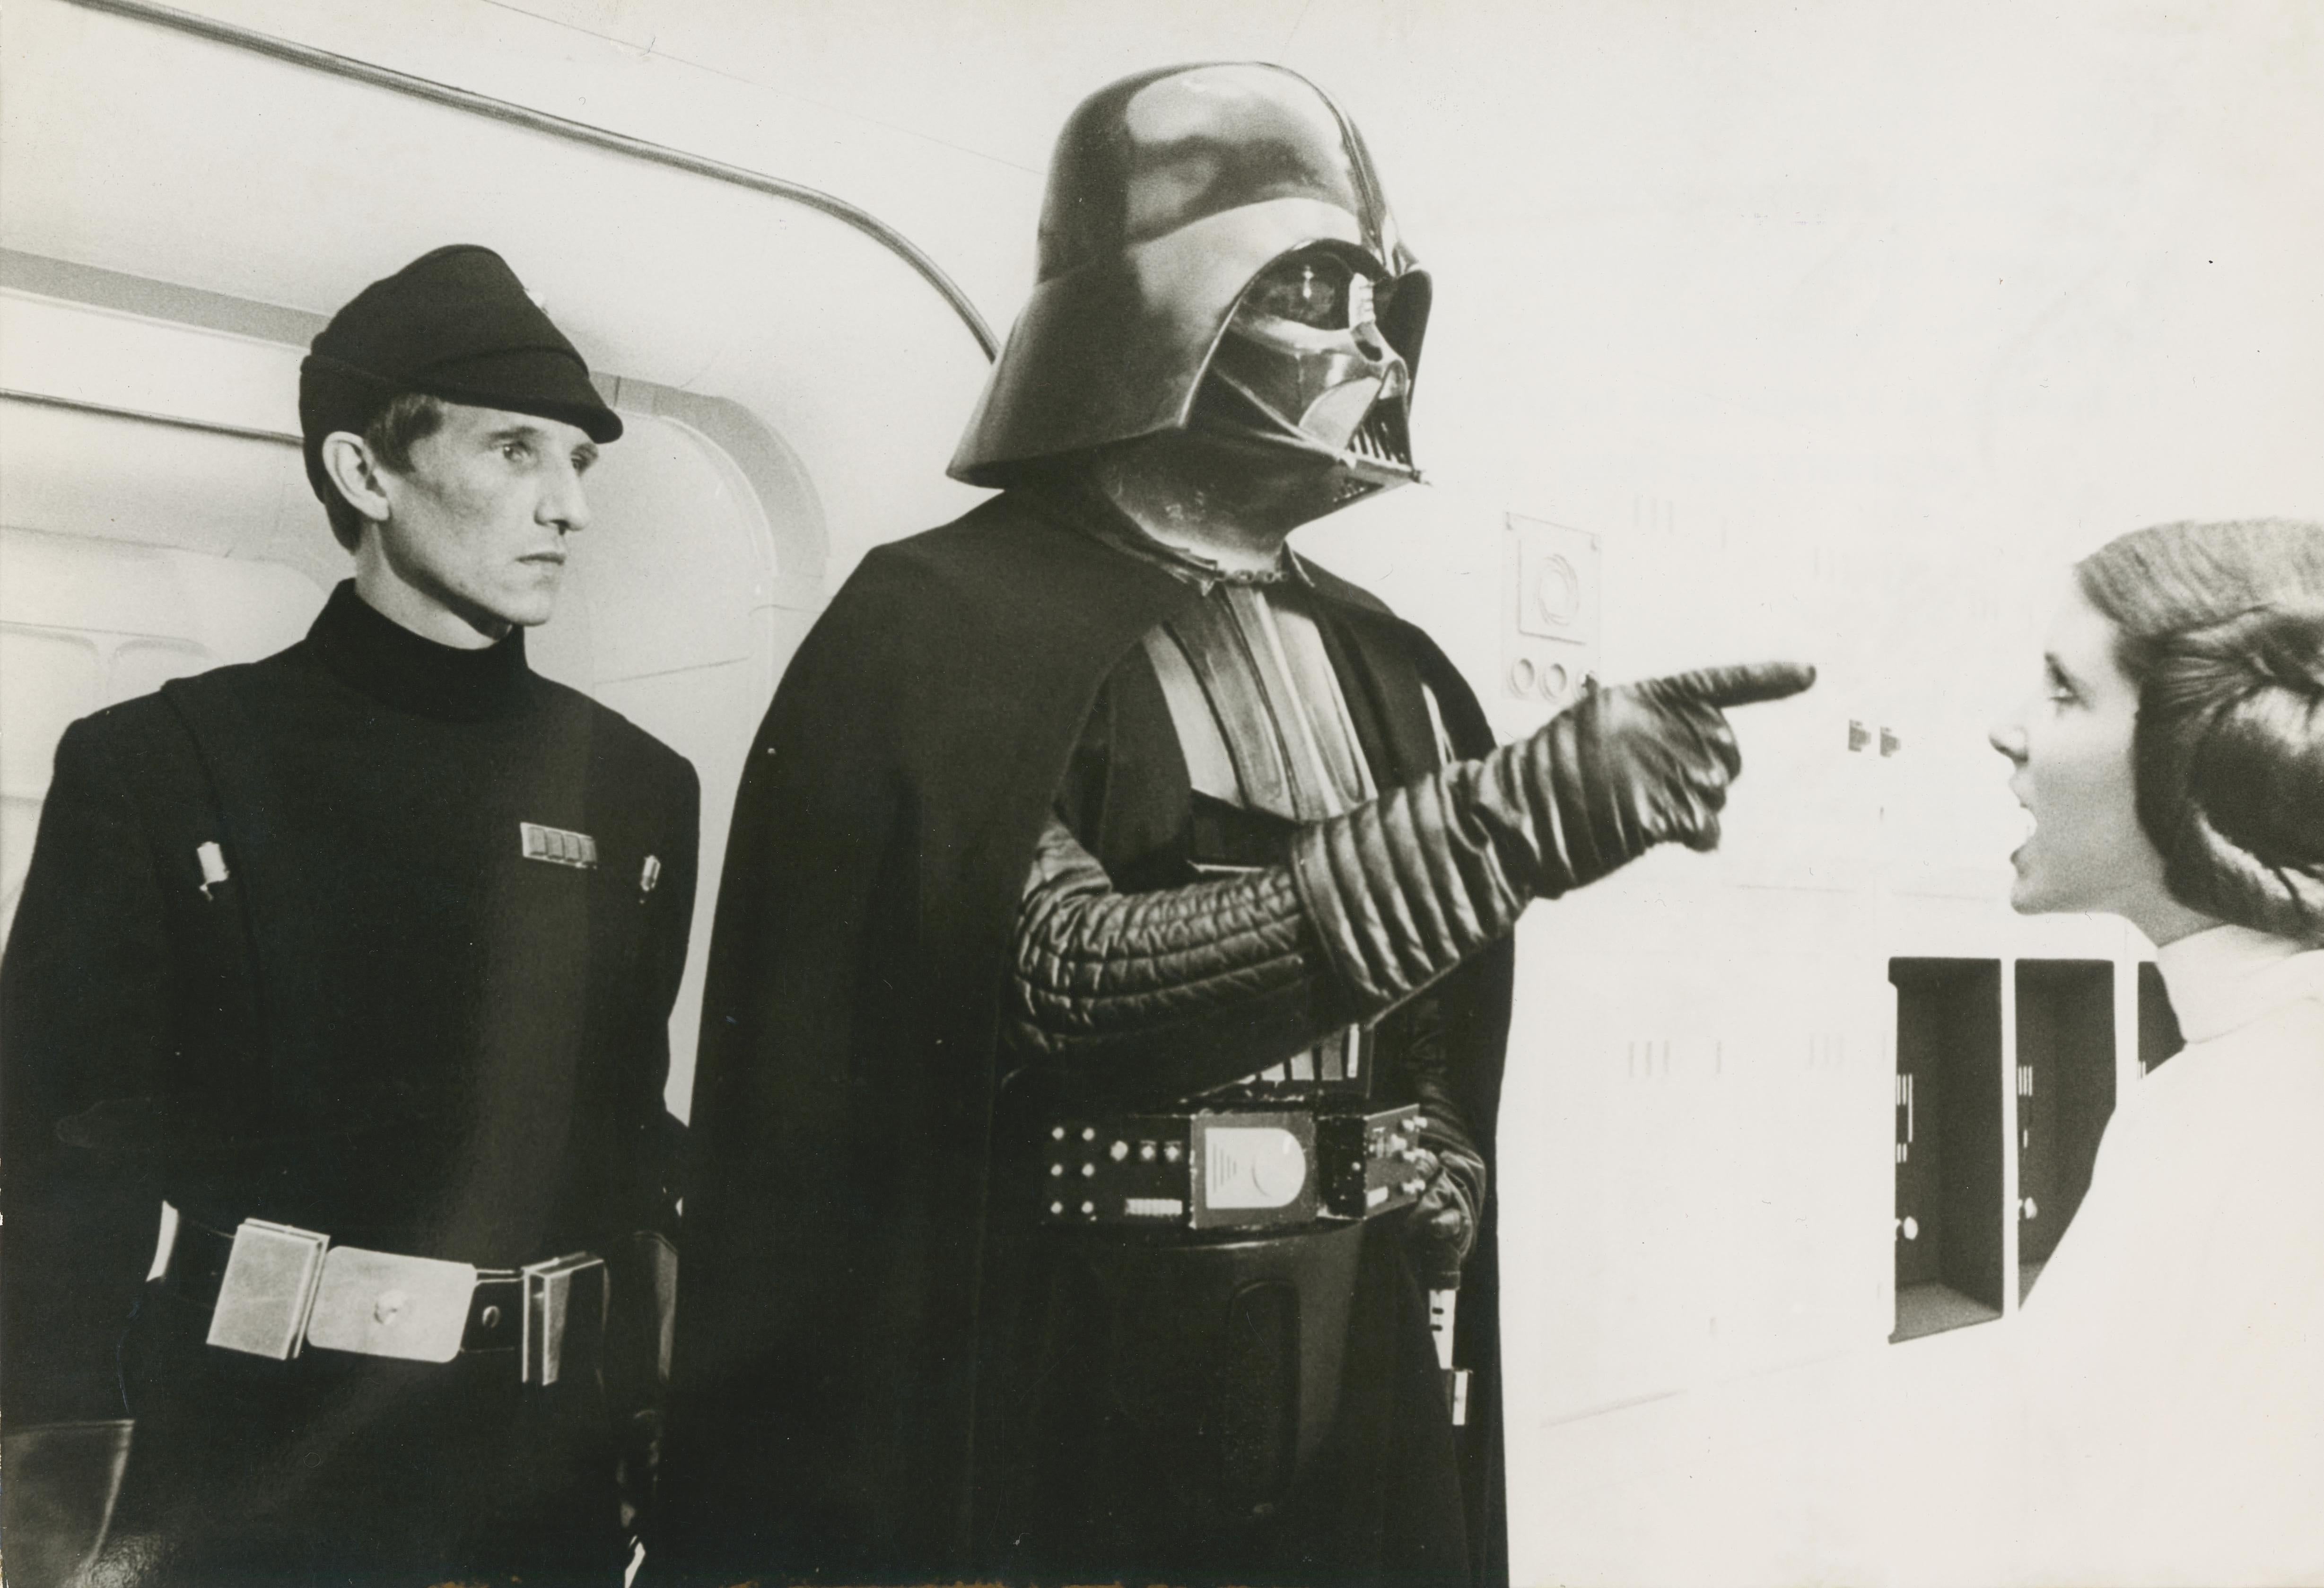 Unknown Portrait Photograph – Star Wars, Darth Vader und Leia, Sience Fiction Filmstill, 1977